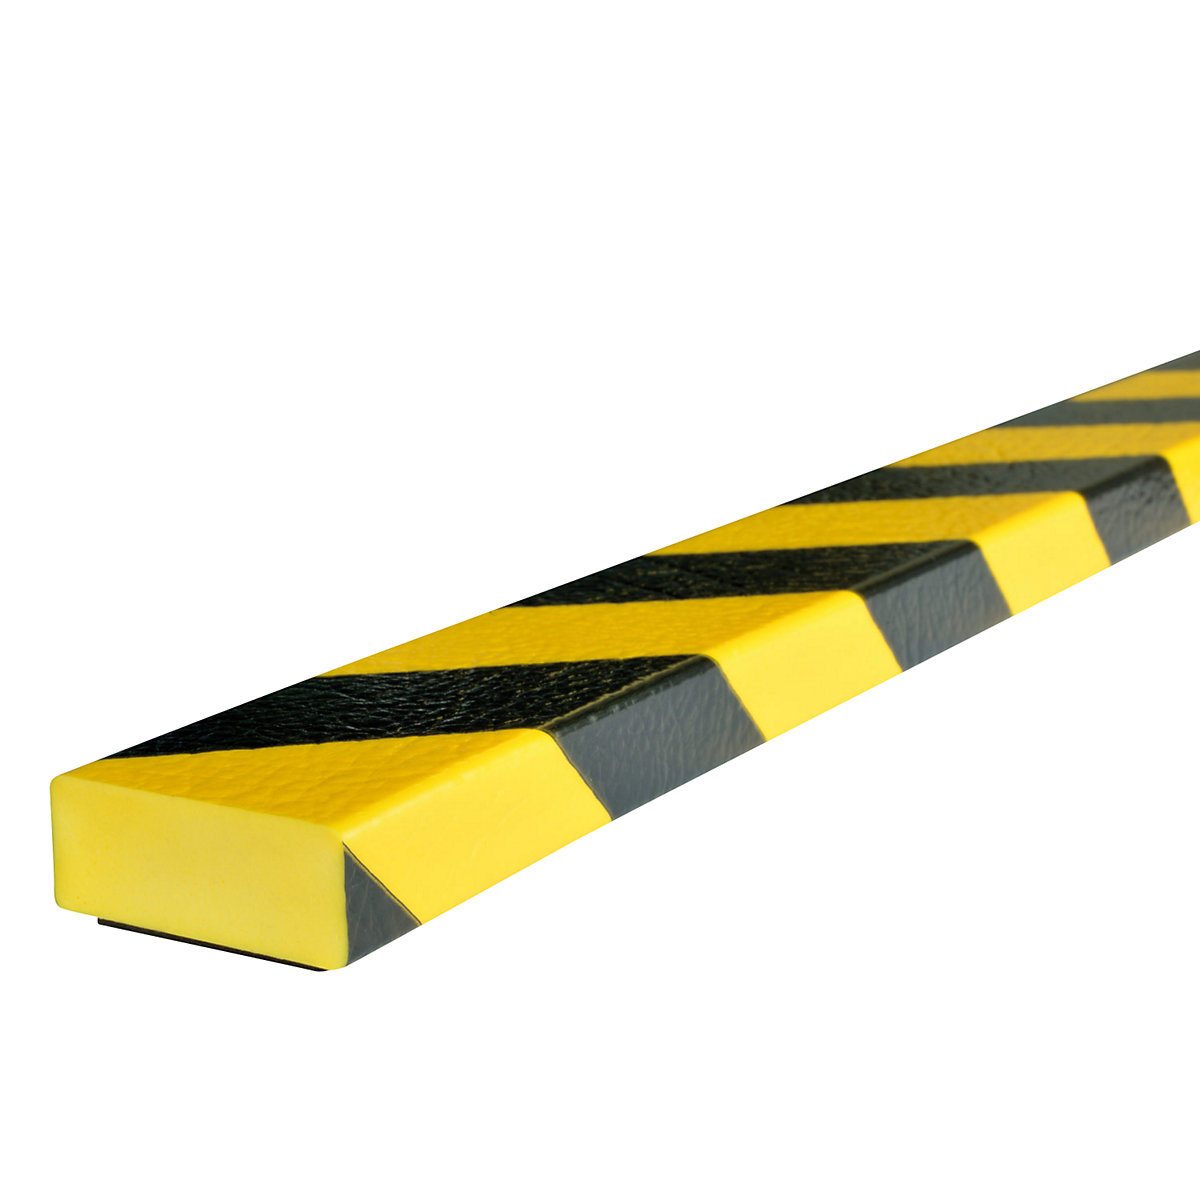 Knuffi®-oppervlaktebescherming – SHG, type D, stuk van 1 m, magneet, geel/zwart-22